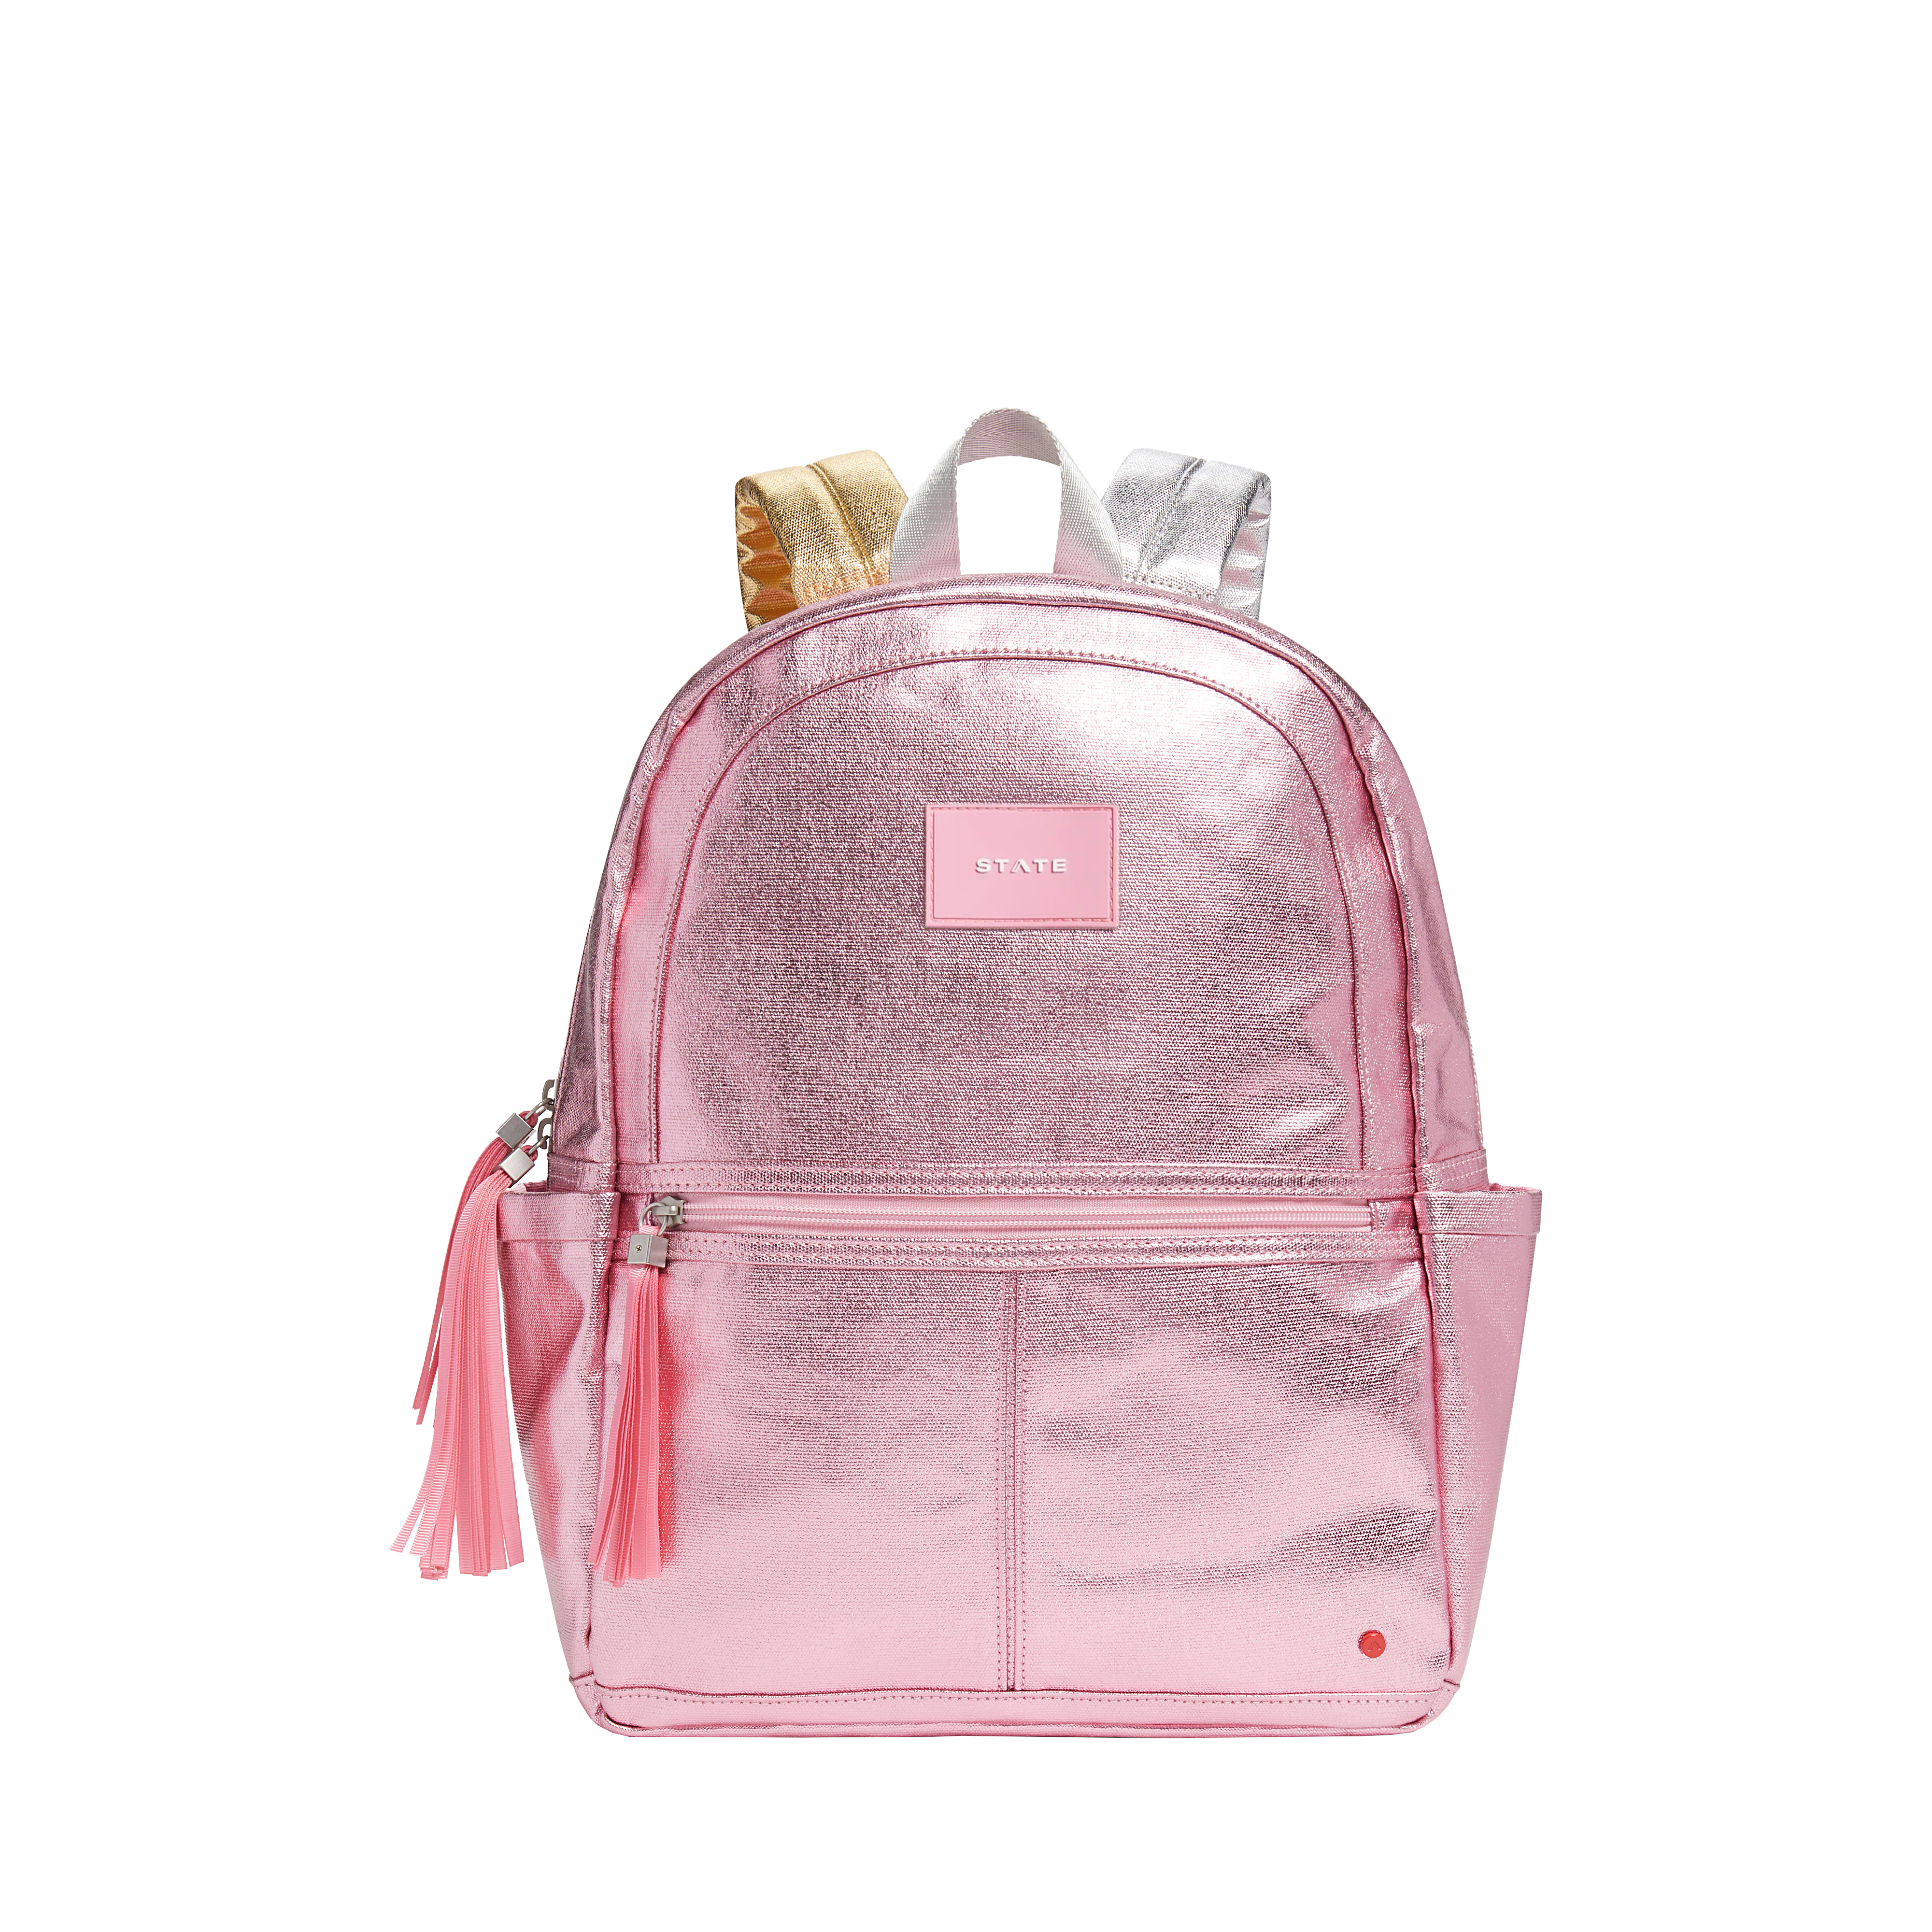 KANE Kids Travel Backpack in Metallic Pink/Silver